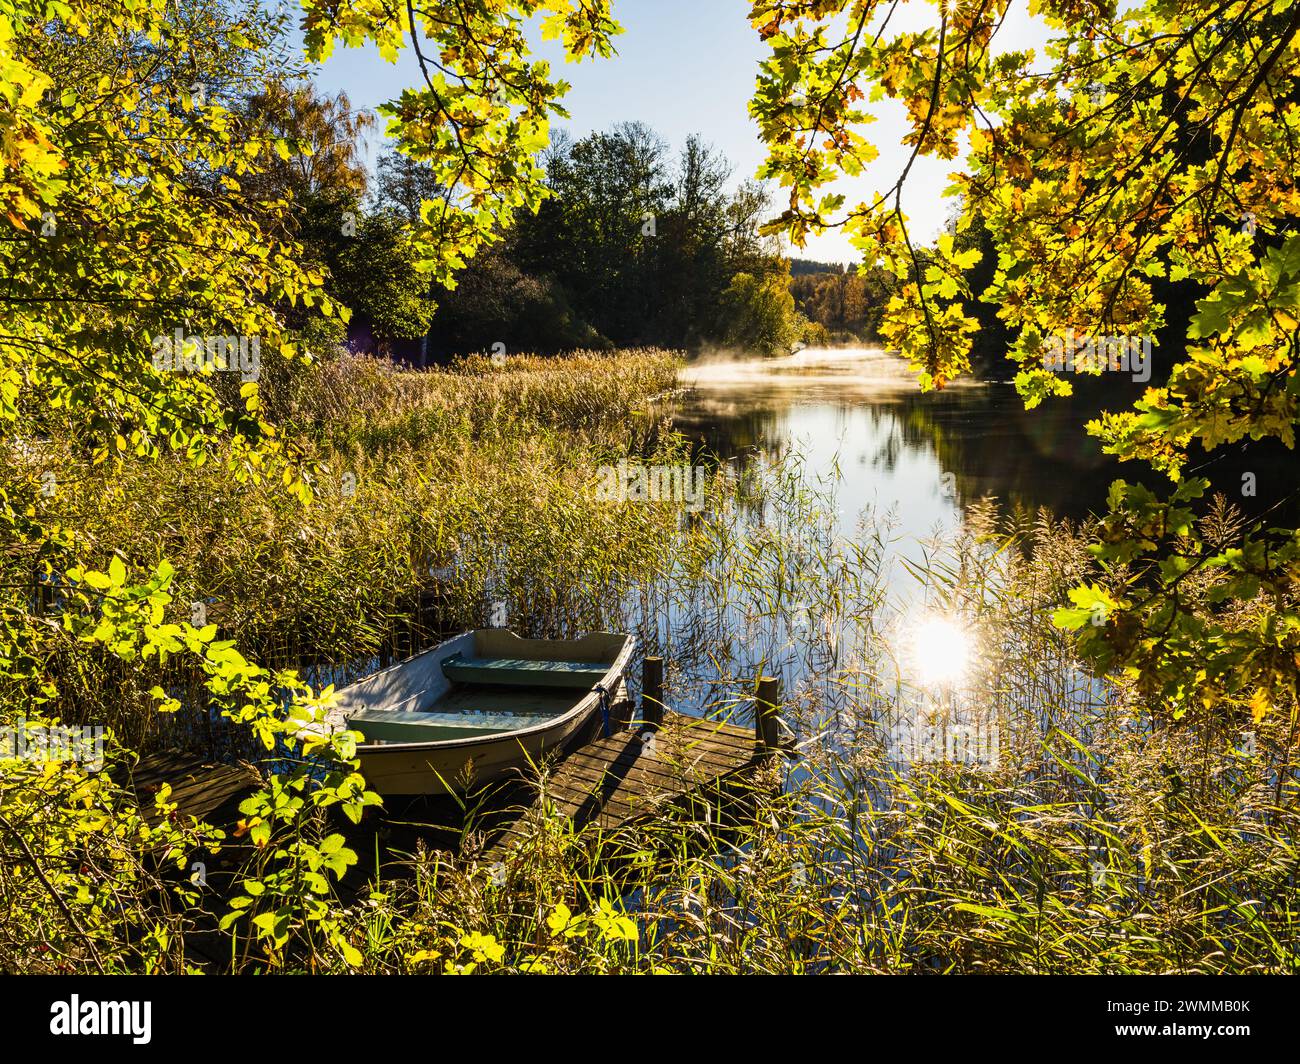 Una tranquilla scena si snoda lungo un fiume in Svezia, dove una barca a remi poggia su un piccolo molo di legno. Circondato dai colori vivaci delle foglie autunnali Foto Stock